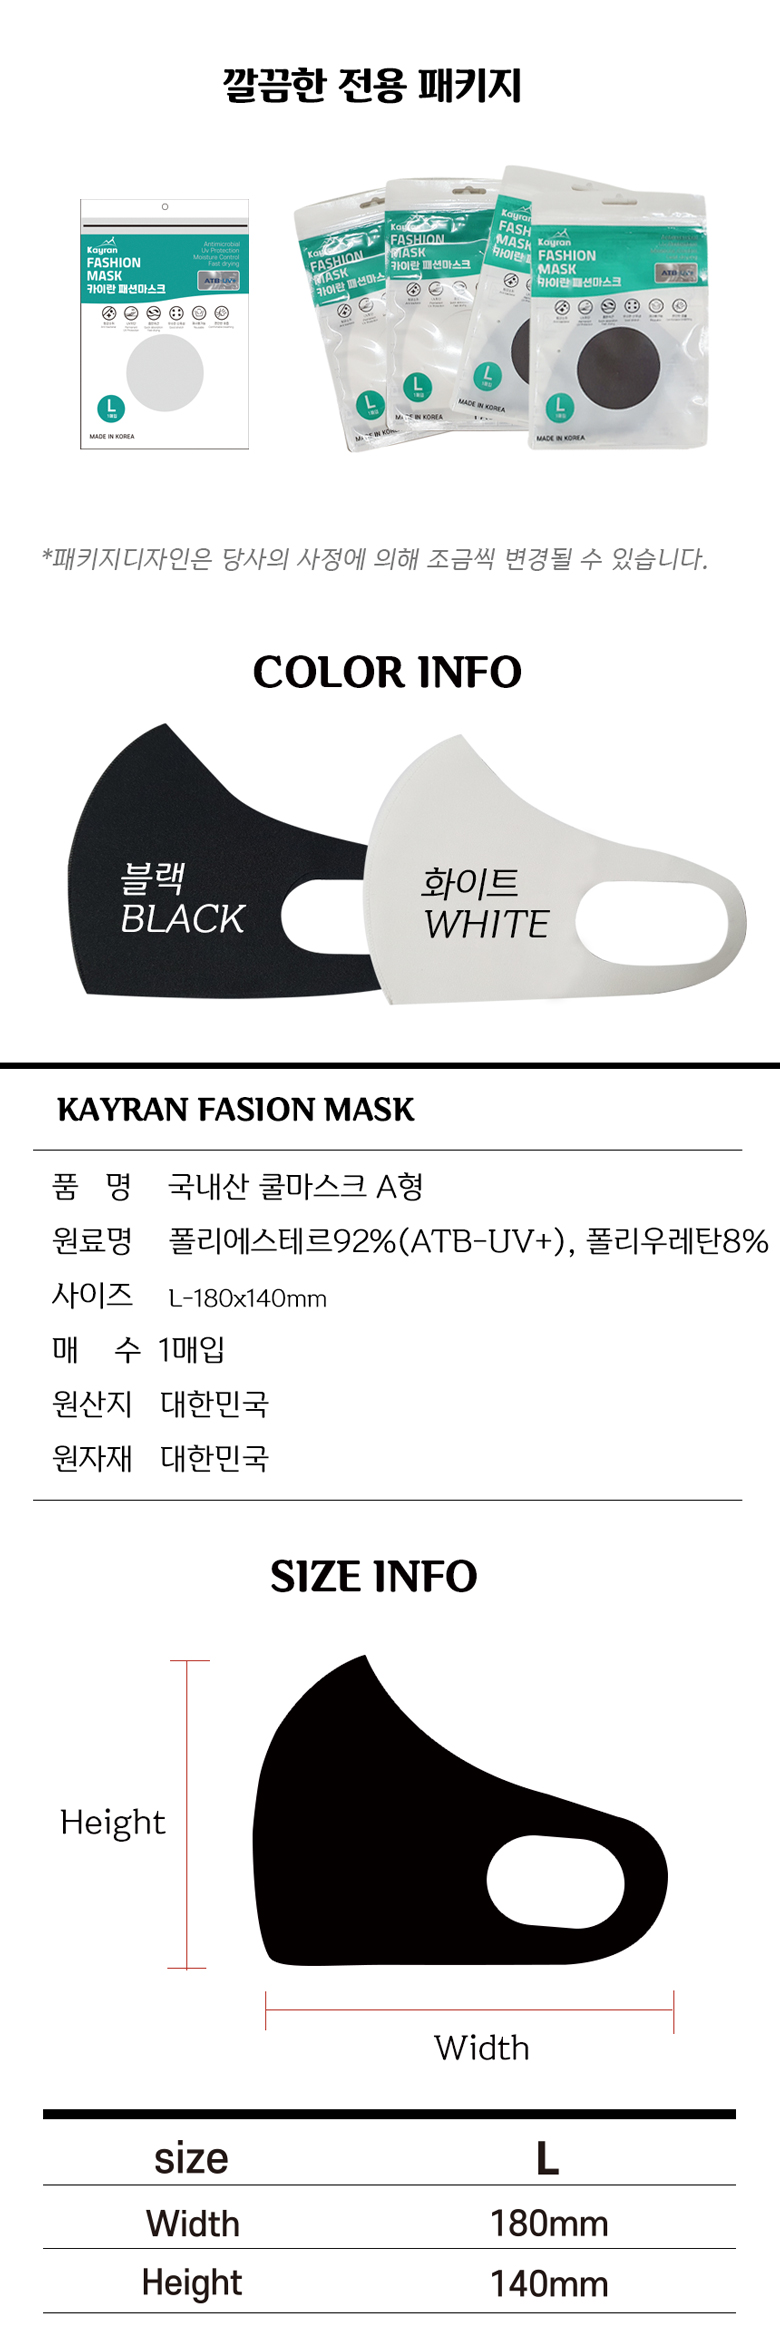 20_mask_korea_detail2_01.jpg